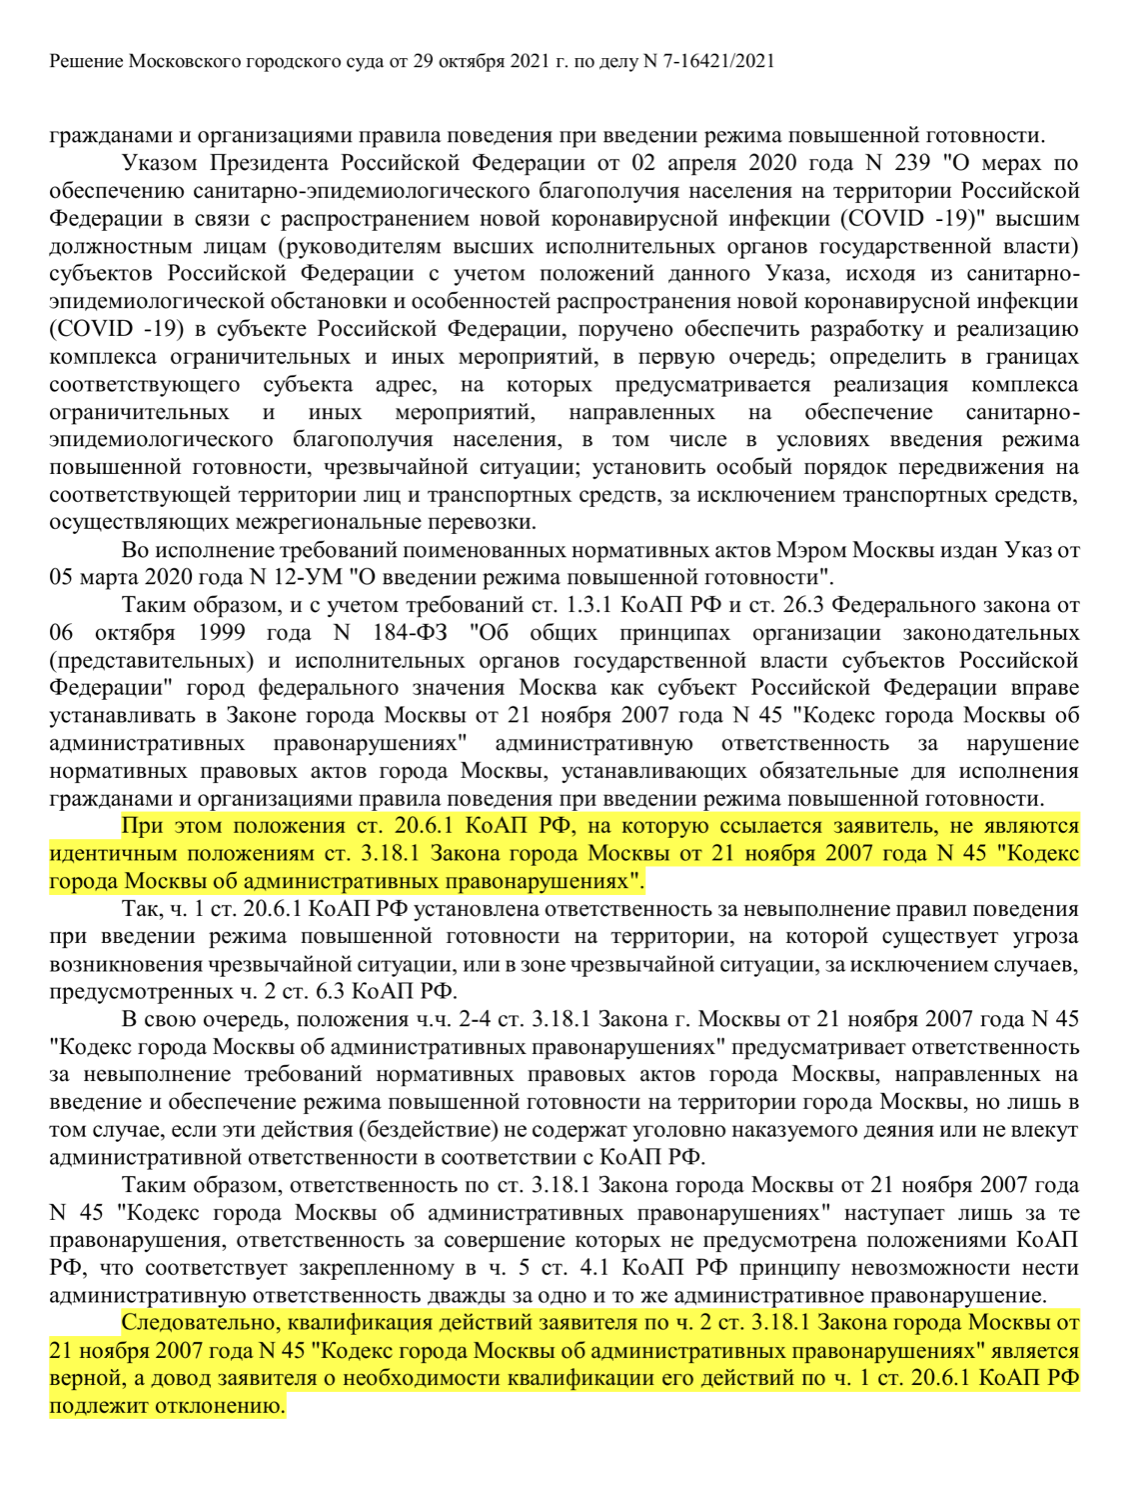 В другом деле Мосгорсуд не повторяет разъяснения Верховного суда, а дает свое толкование, но штраф по московскому законодательству считает верным